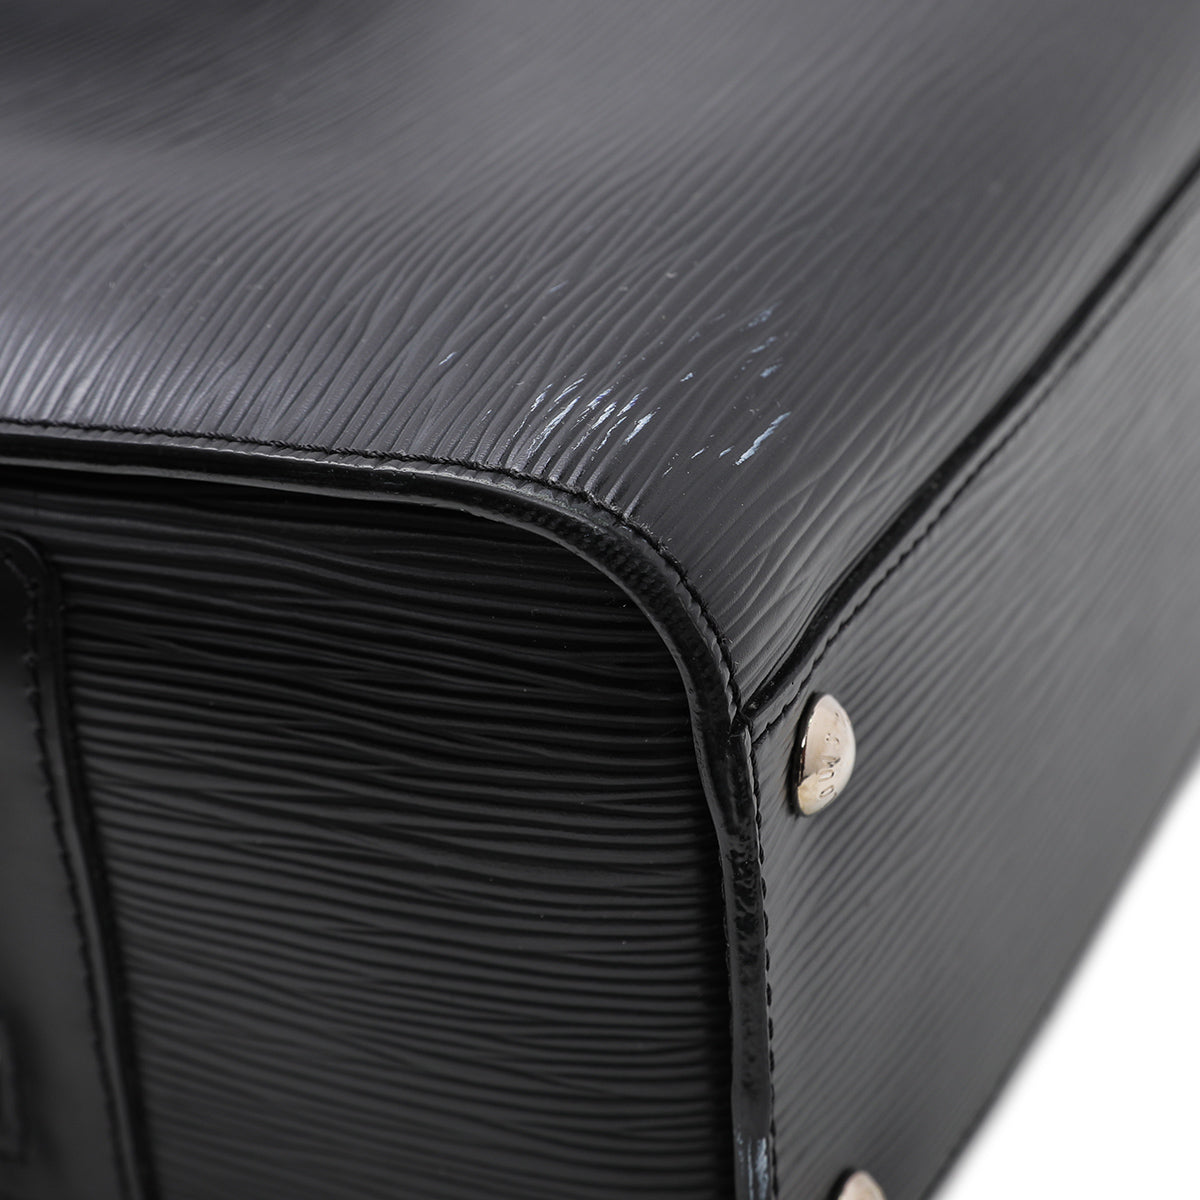 Louis Vuitton Epi Leather Bassano GM Briefcase - ShopStyle